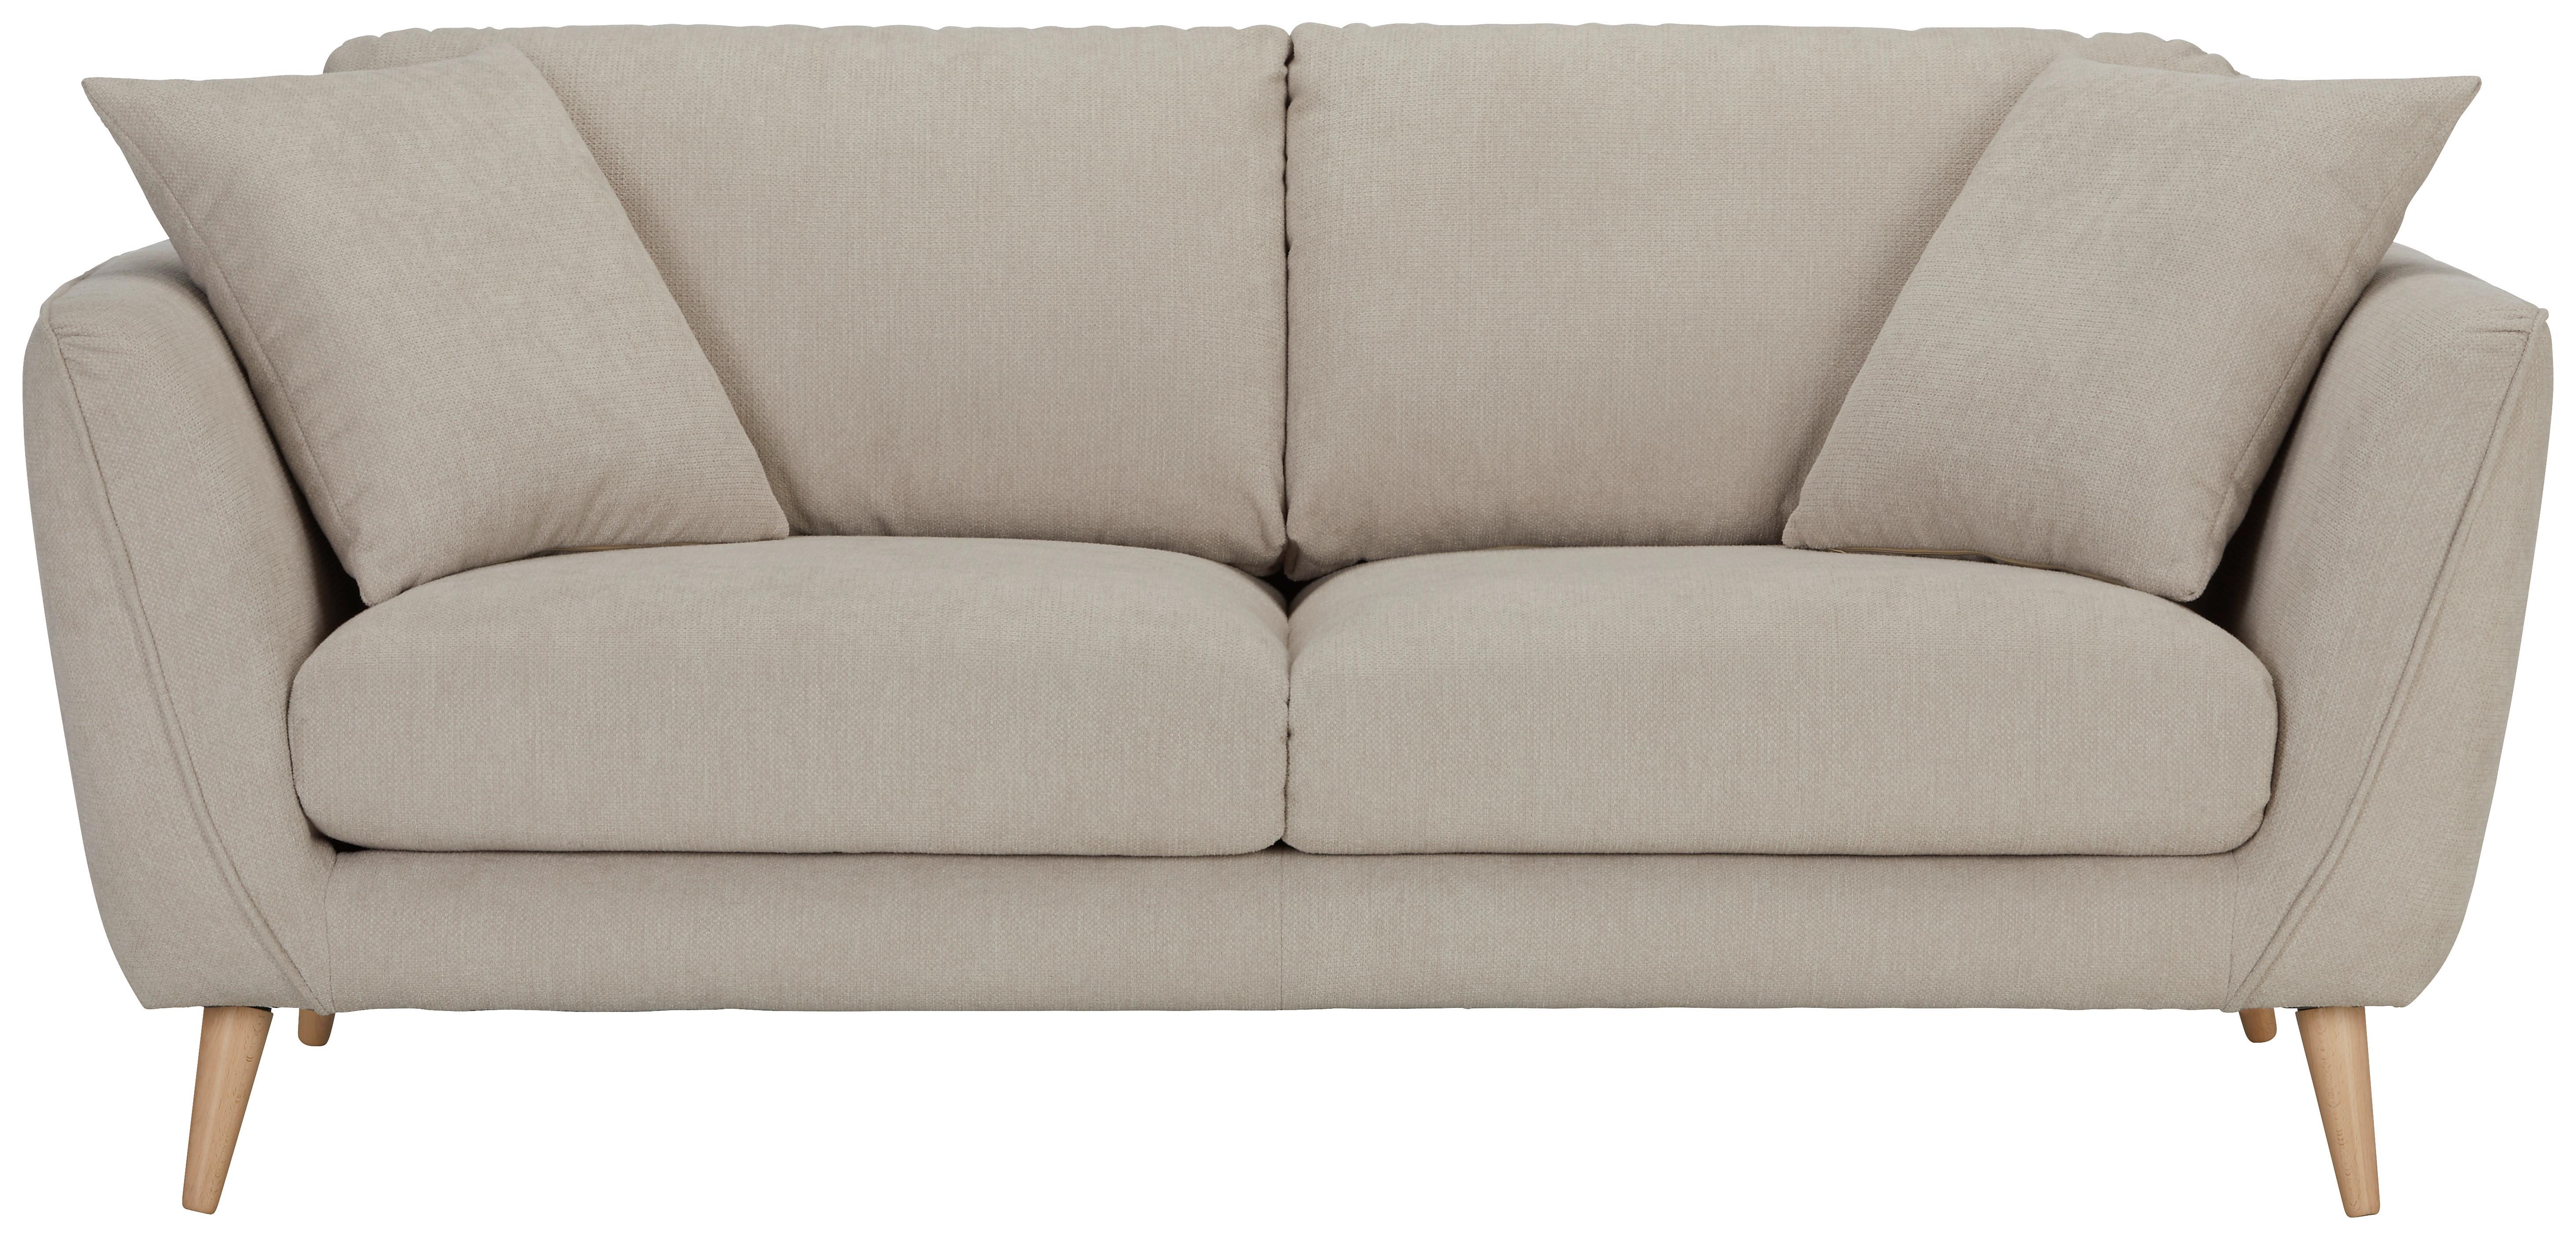 Zweisitzer-Sofa in Beige - Beige/Naturfarben, Konventionell, Textil (190/70/47/97cm) - Zandiara